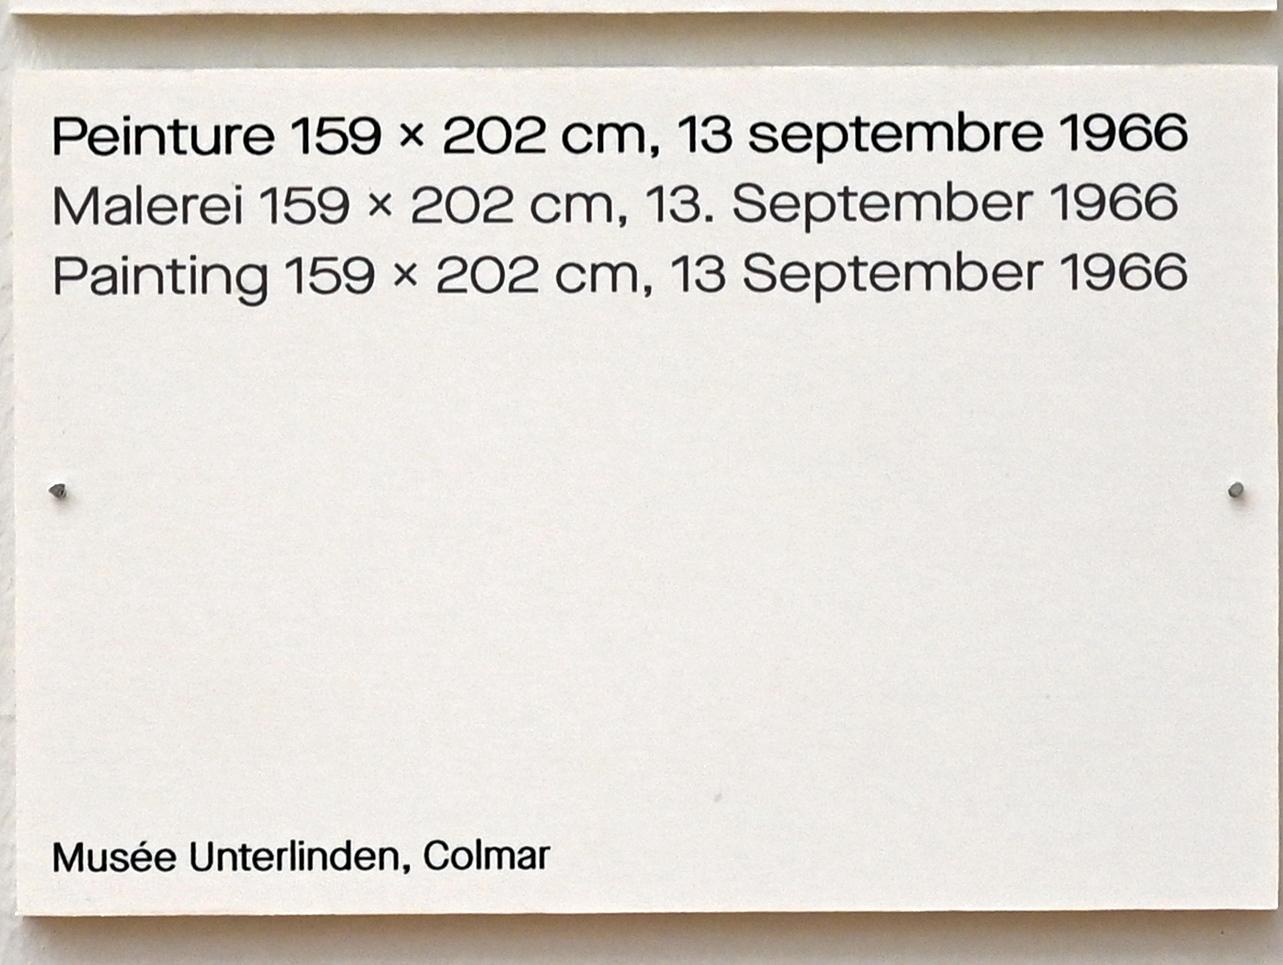 Pierre Soulages (1946–2019), Malerei 159 x 202 cm, 13. September 1966, Chemnitz, Kunstsammlungen am Theaterplatz, Ausstellung "Soulages" vom 28.03.-25.07.2021, Saal 6, 1966, Bild 2/2